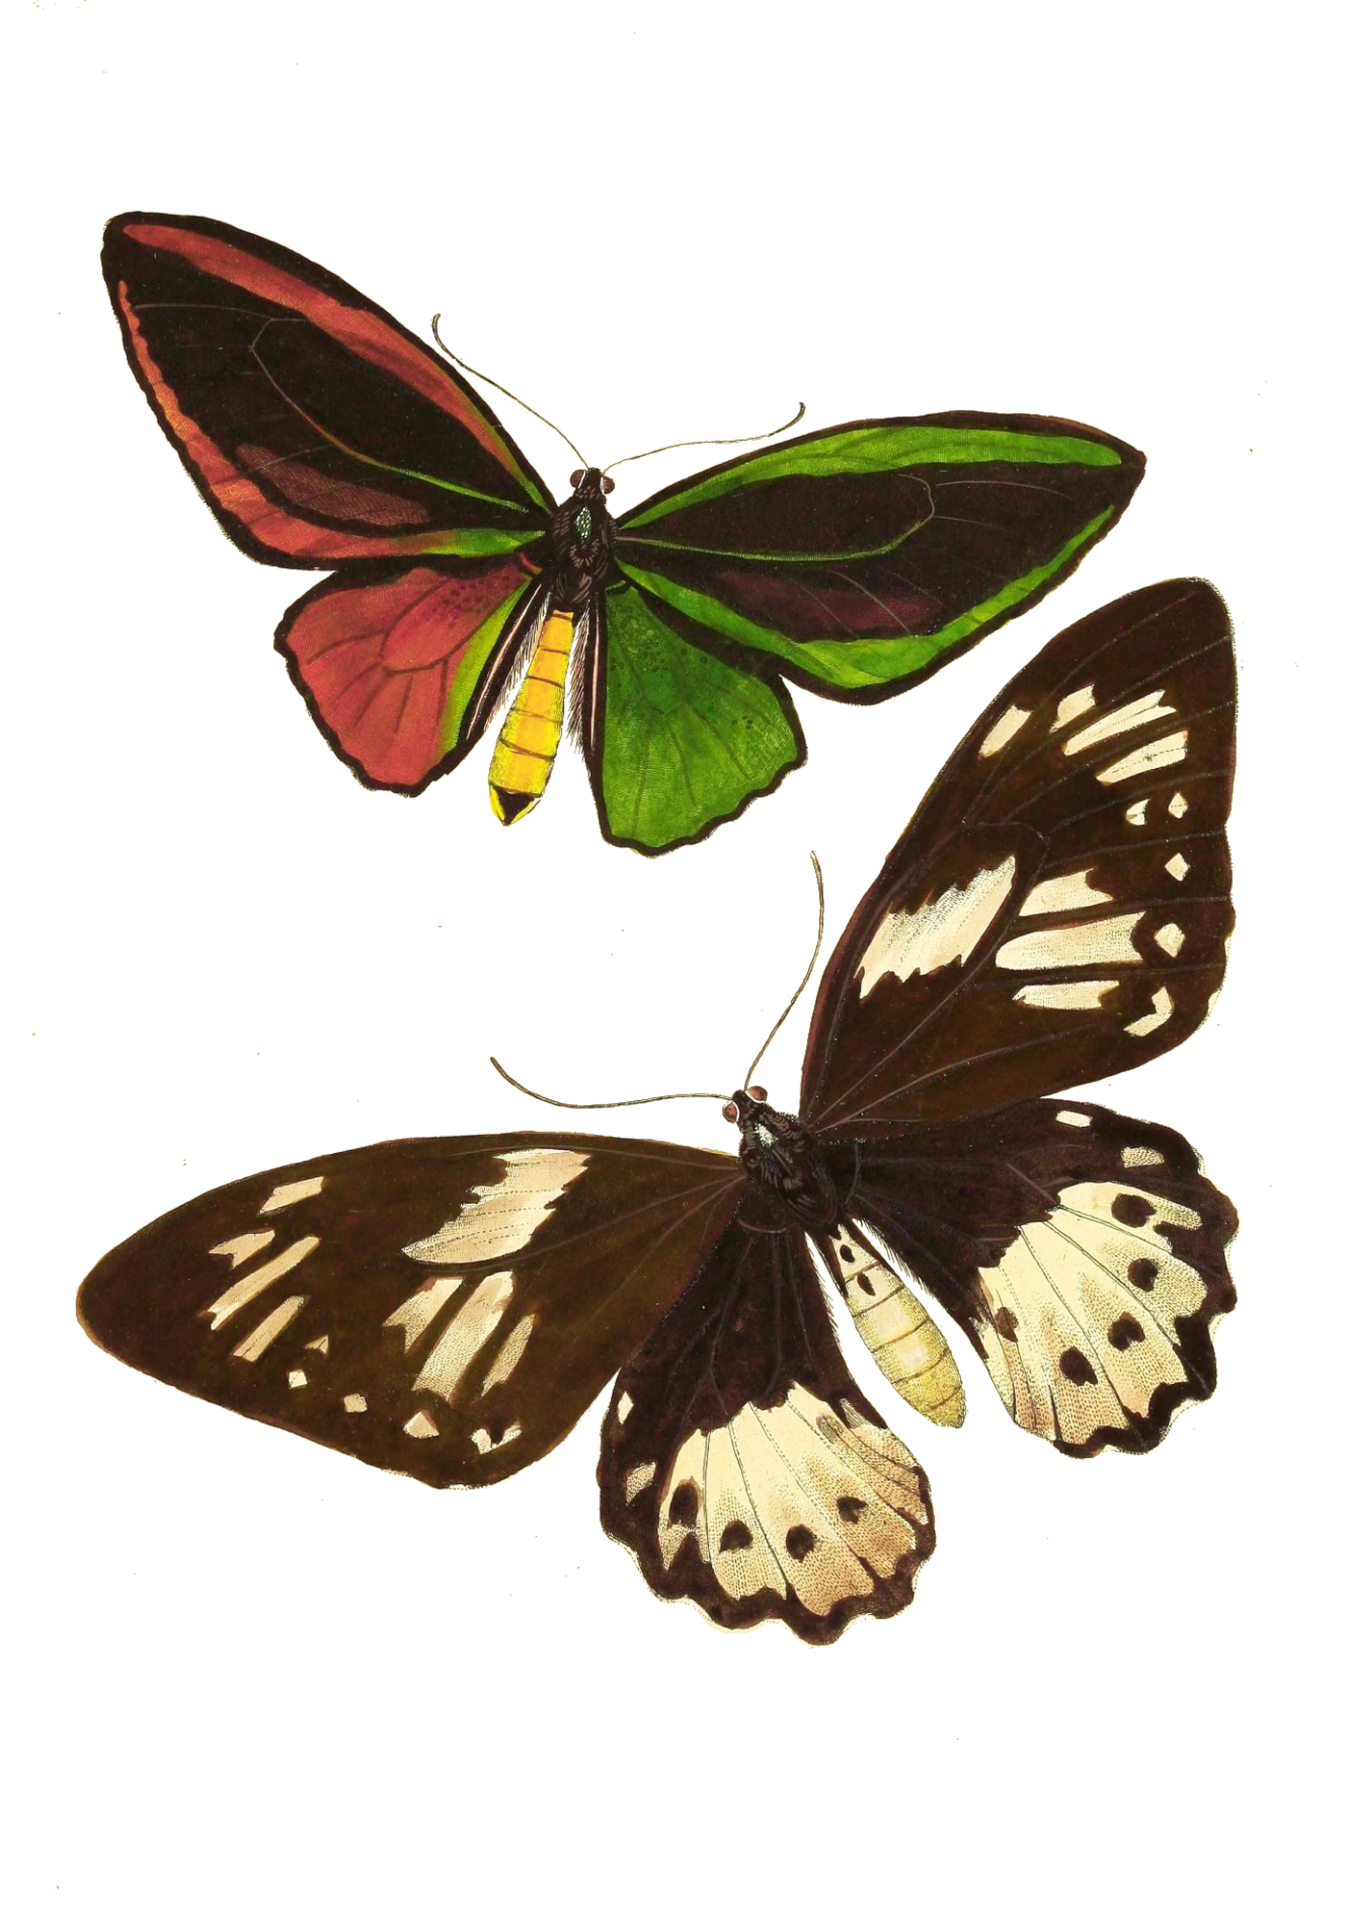 Arte vintage de la mariposa polilla